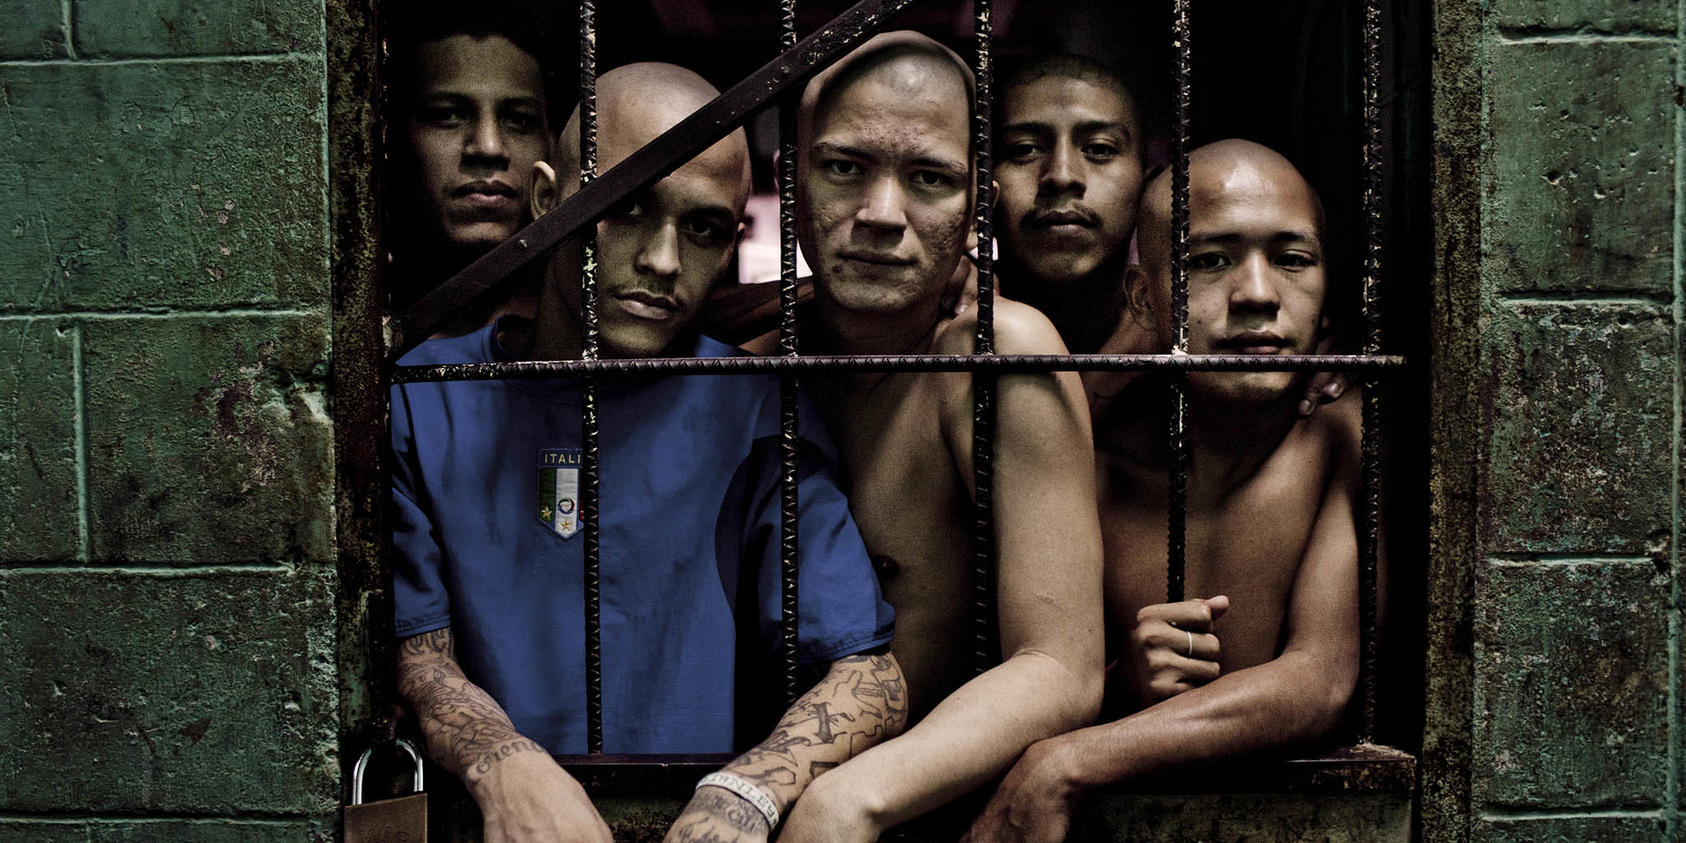 Miembros de la pandilla Barrio 18 en la cárcel de Quezaltepeque en Quezaltepeque, El Salvador, 16 de agosto de 2012. (Tomas Munita/The New York Times)